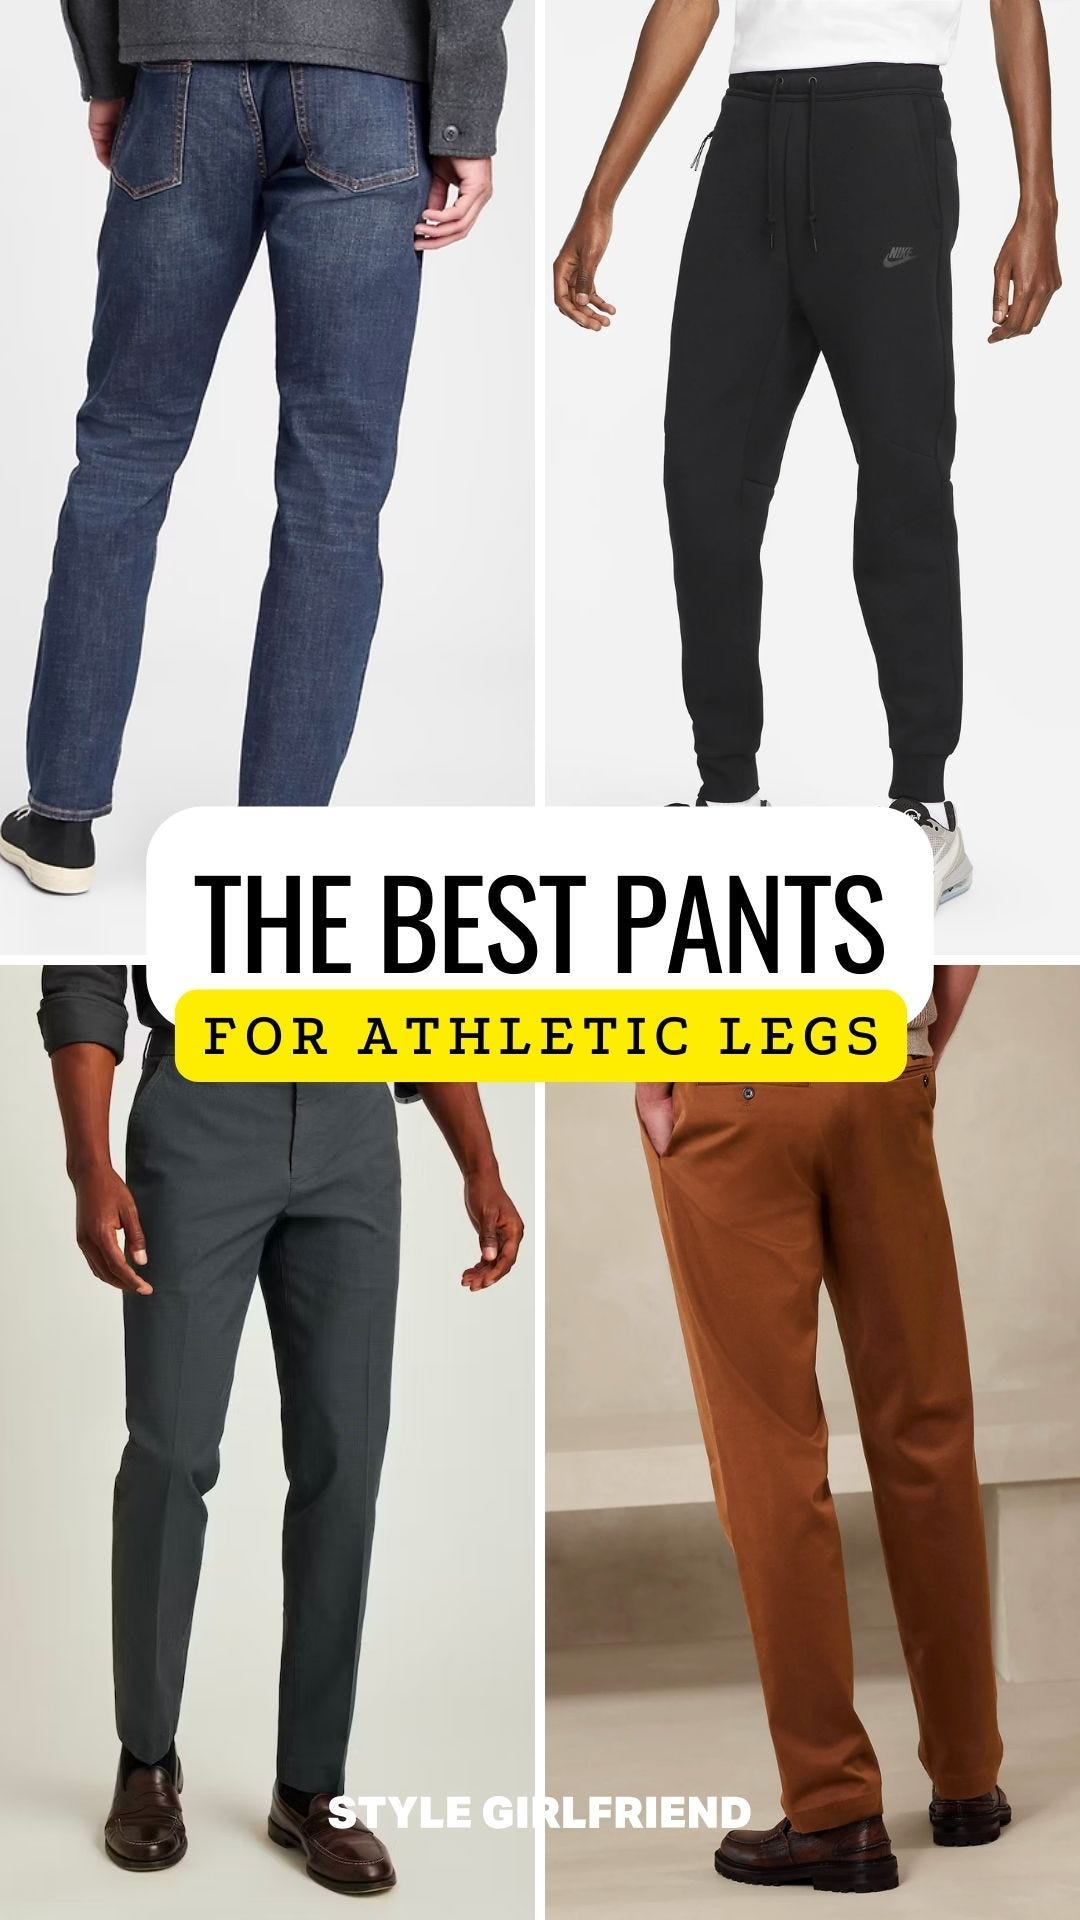 Bonobos Men's Athletic/Slim Fit Italian Soft Cotton Jeans Pants Size  33,34,38 #R | eBay